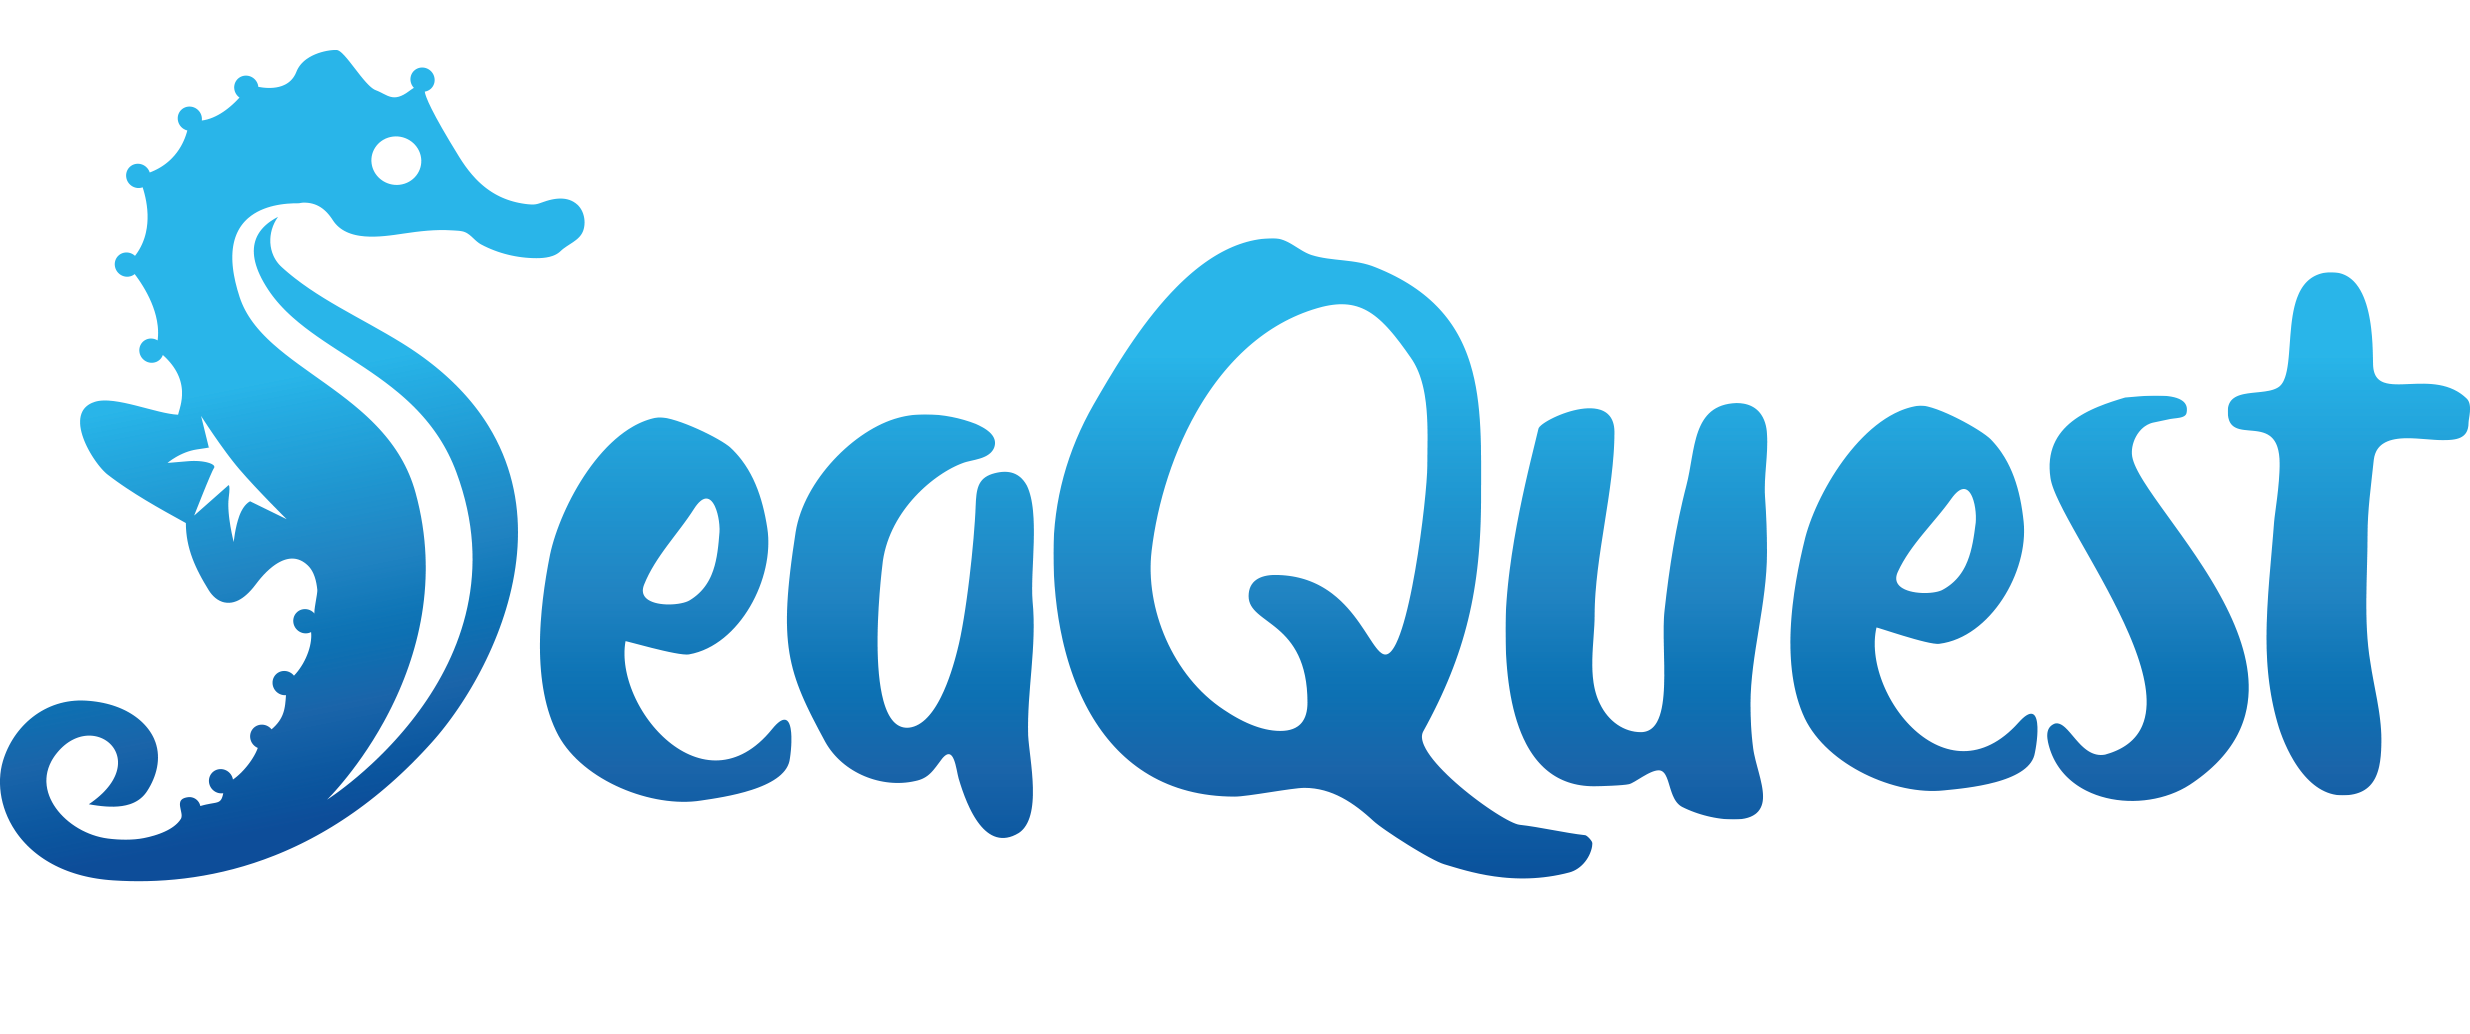 SeaQuest